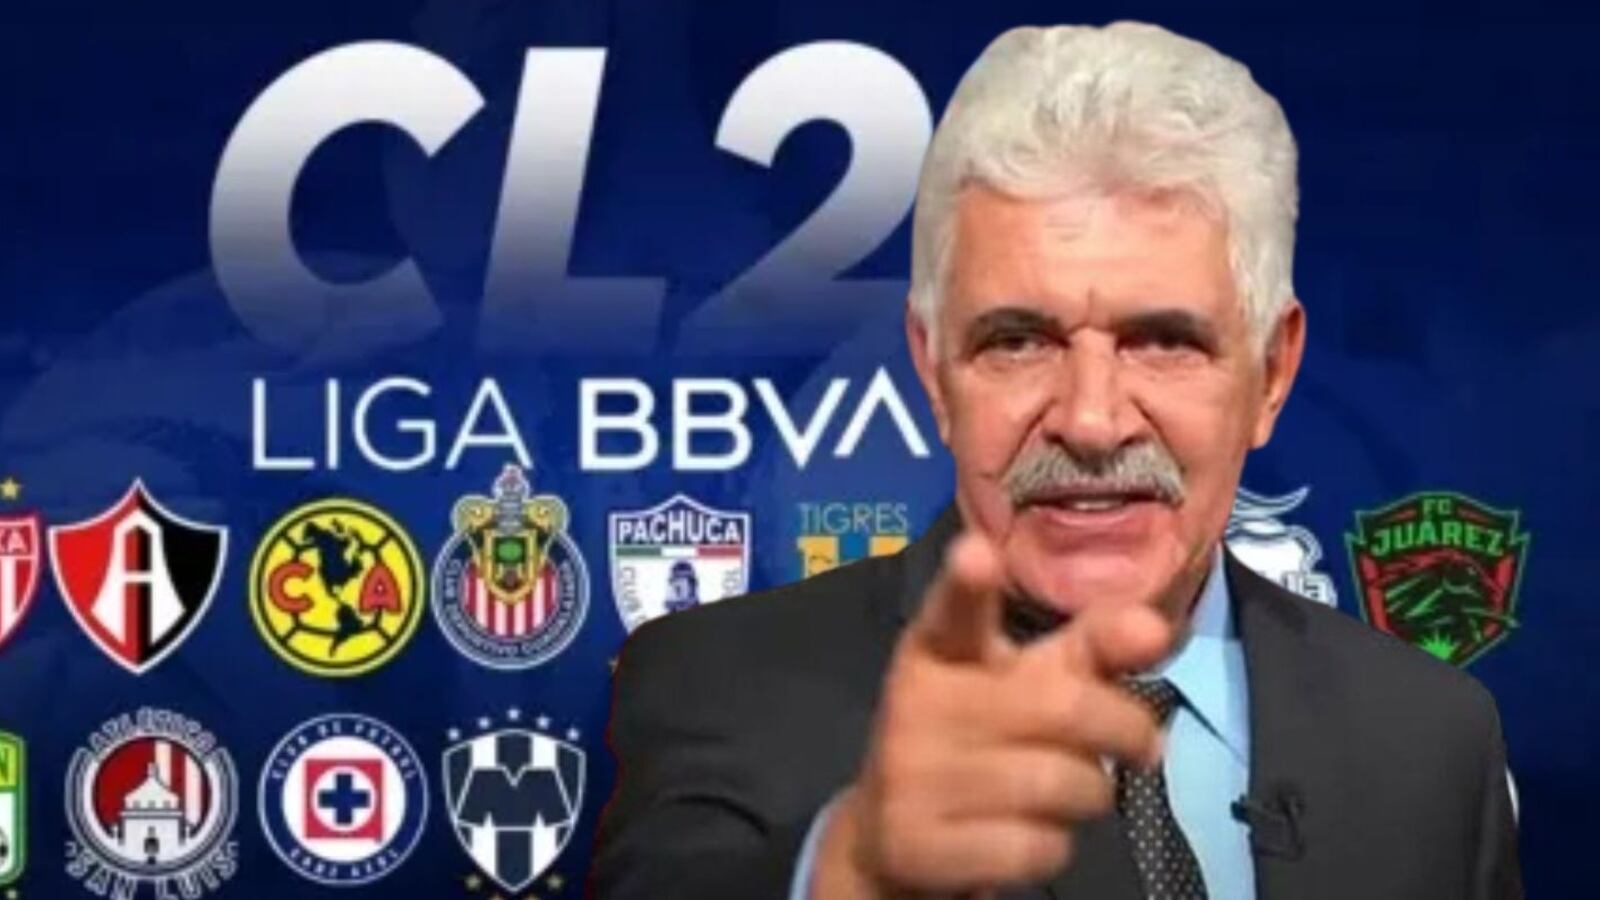 Tiembla Liga MX, Ferretti se adelanta y revela al campeón del C24, no es Tigres